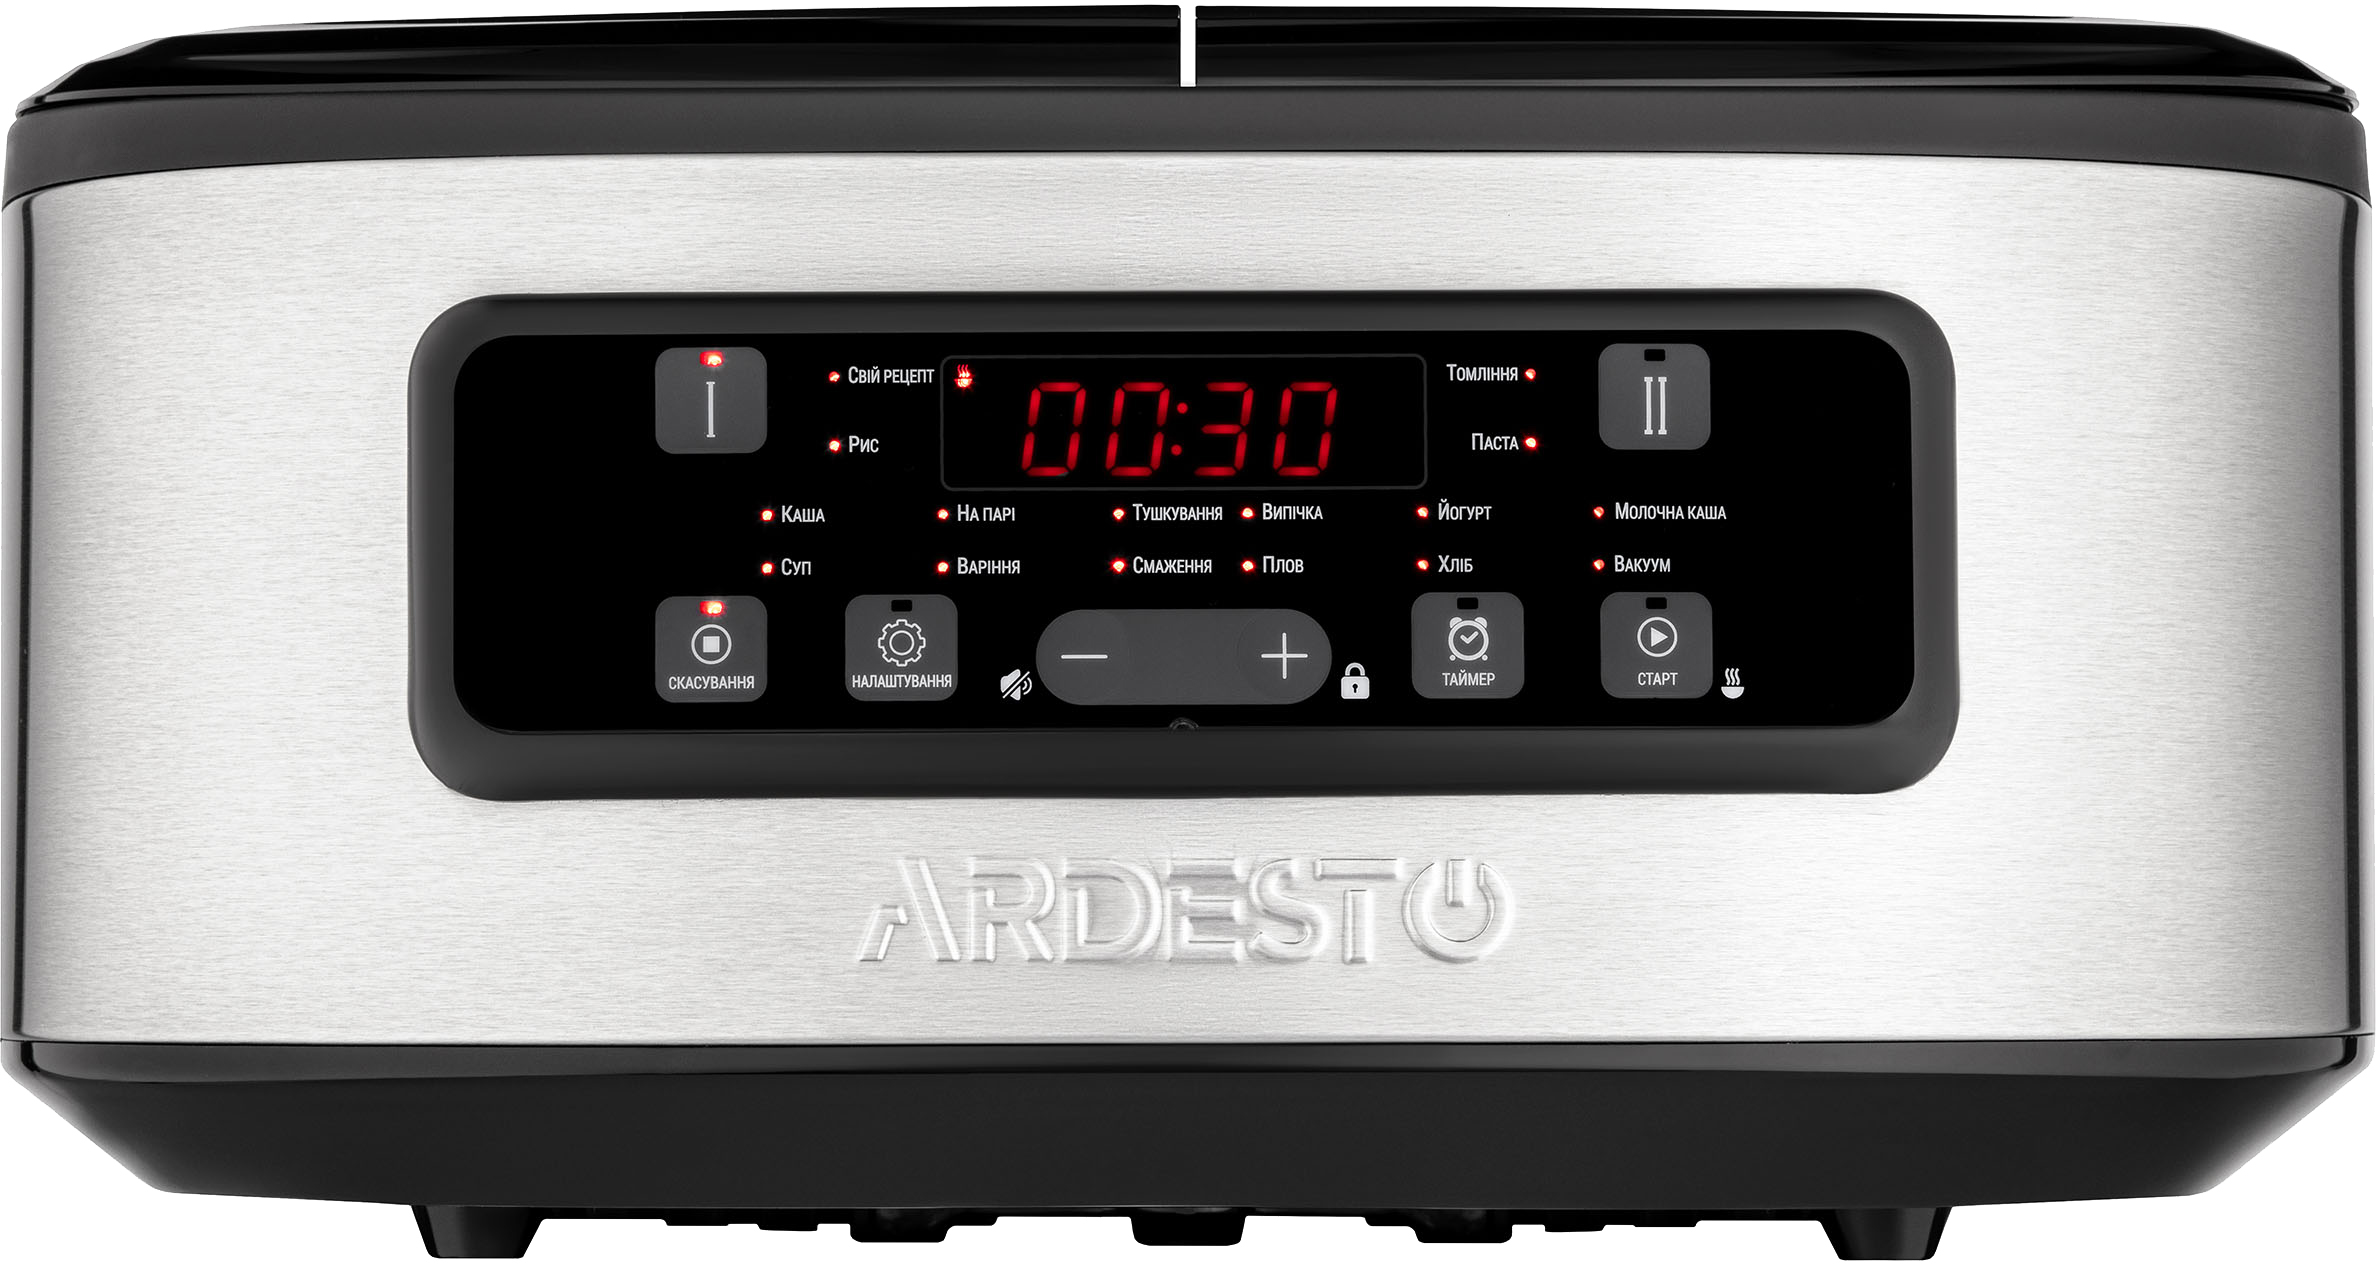 Цена мультиварка Ardesto DMC-SA1212SB в Житомире